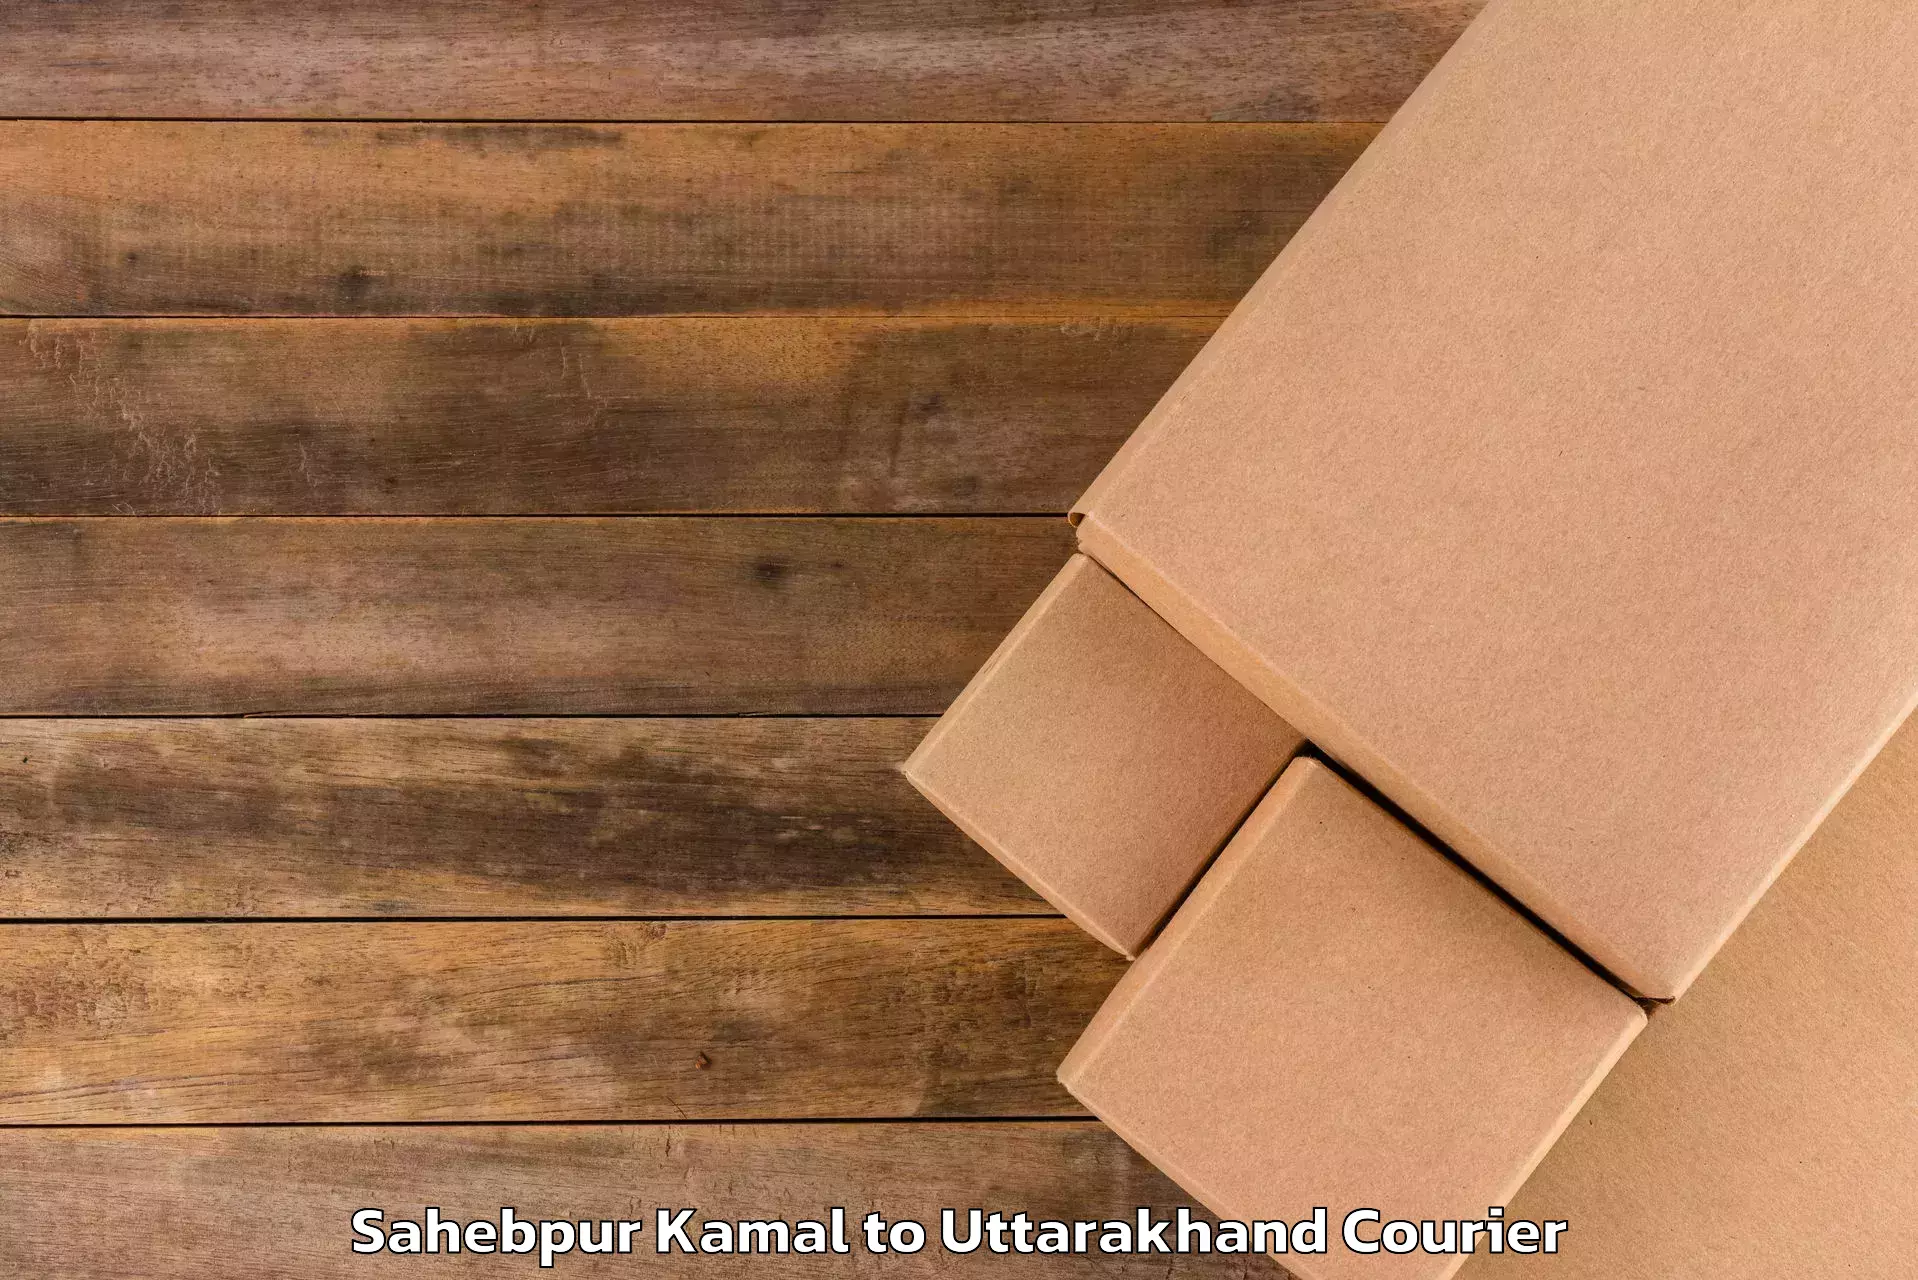 Luggage delivery operations Sahebpur Kamal to Uttarakhand